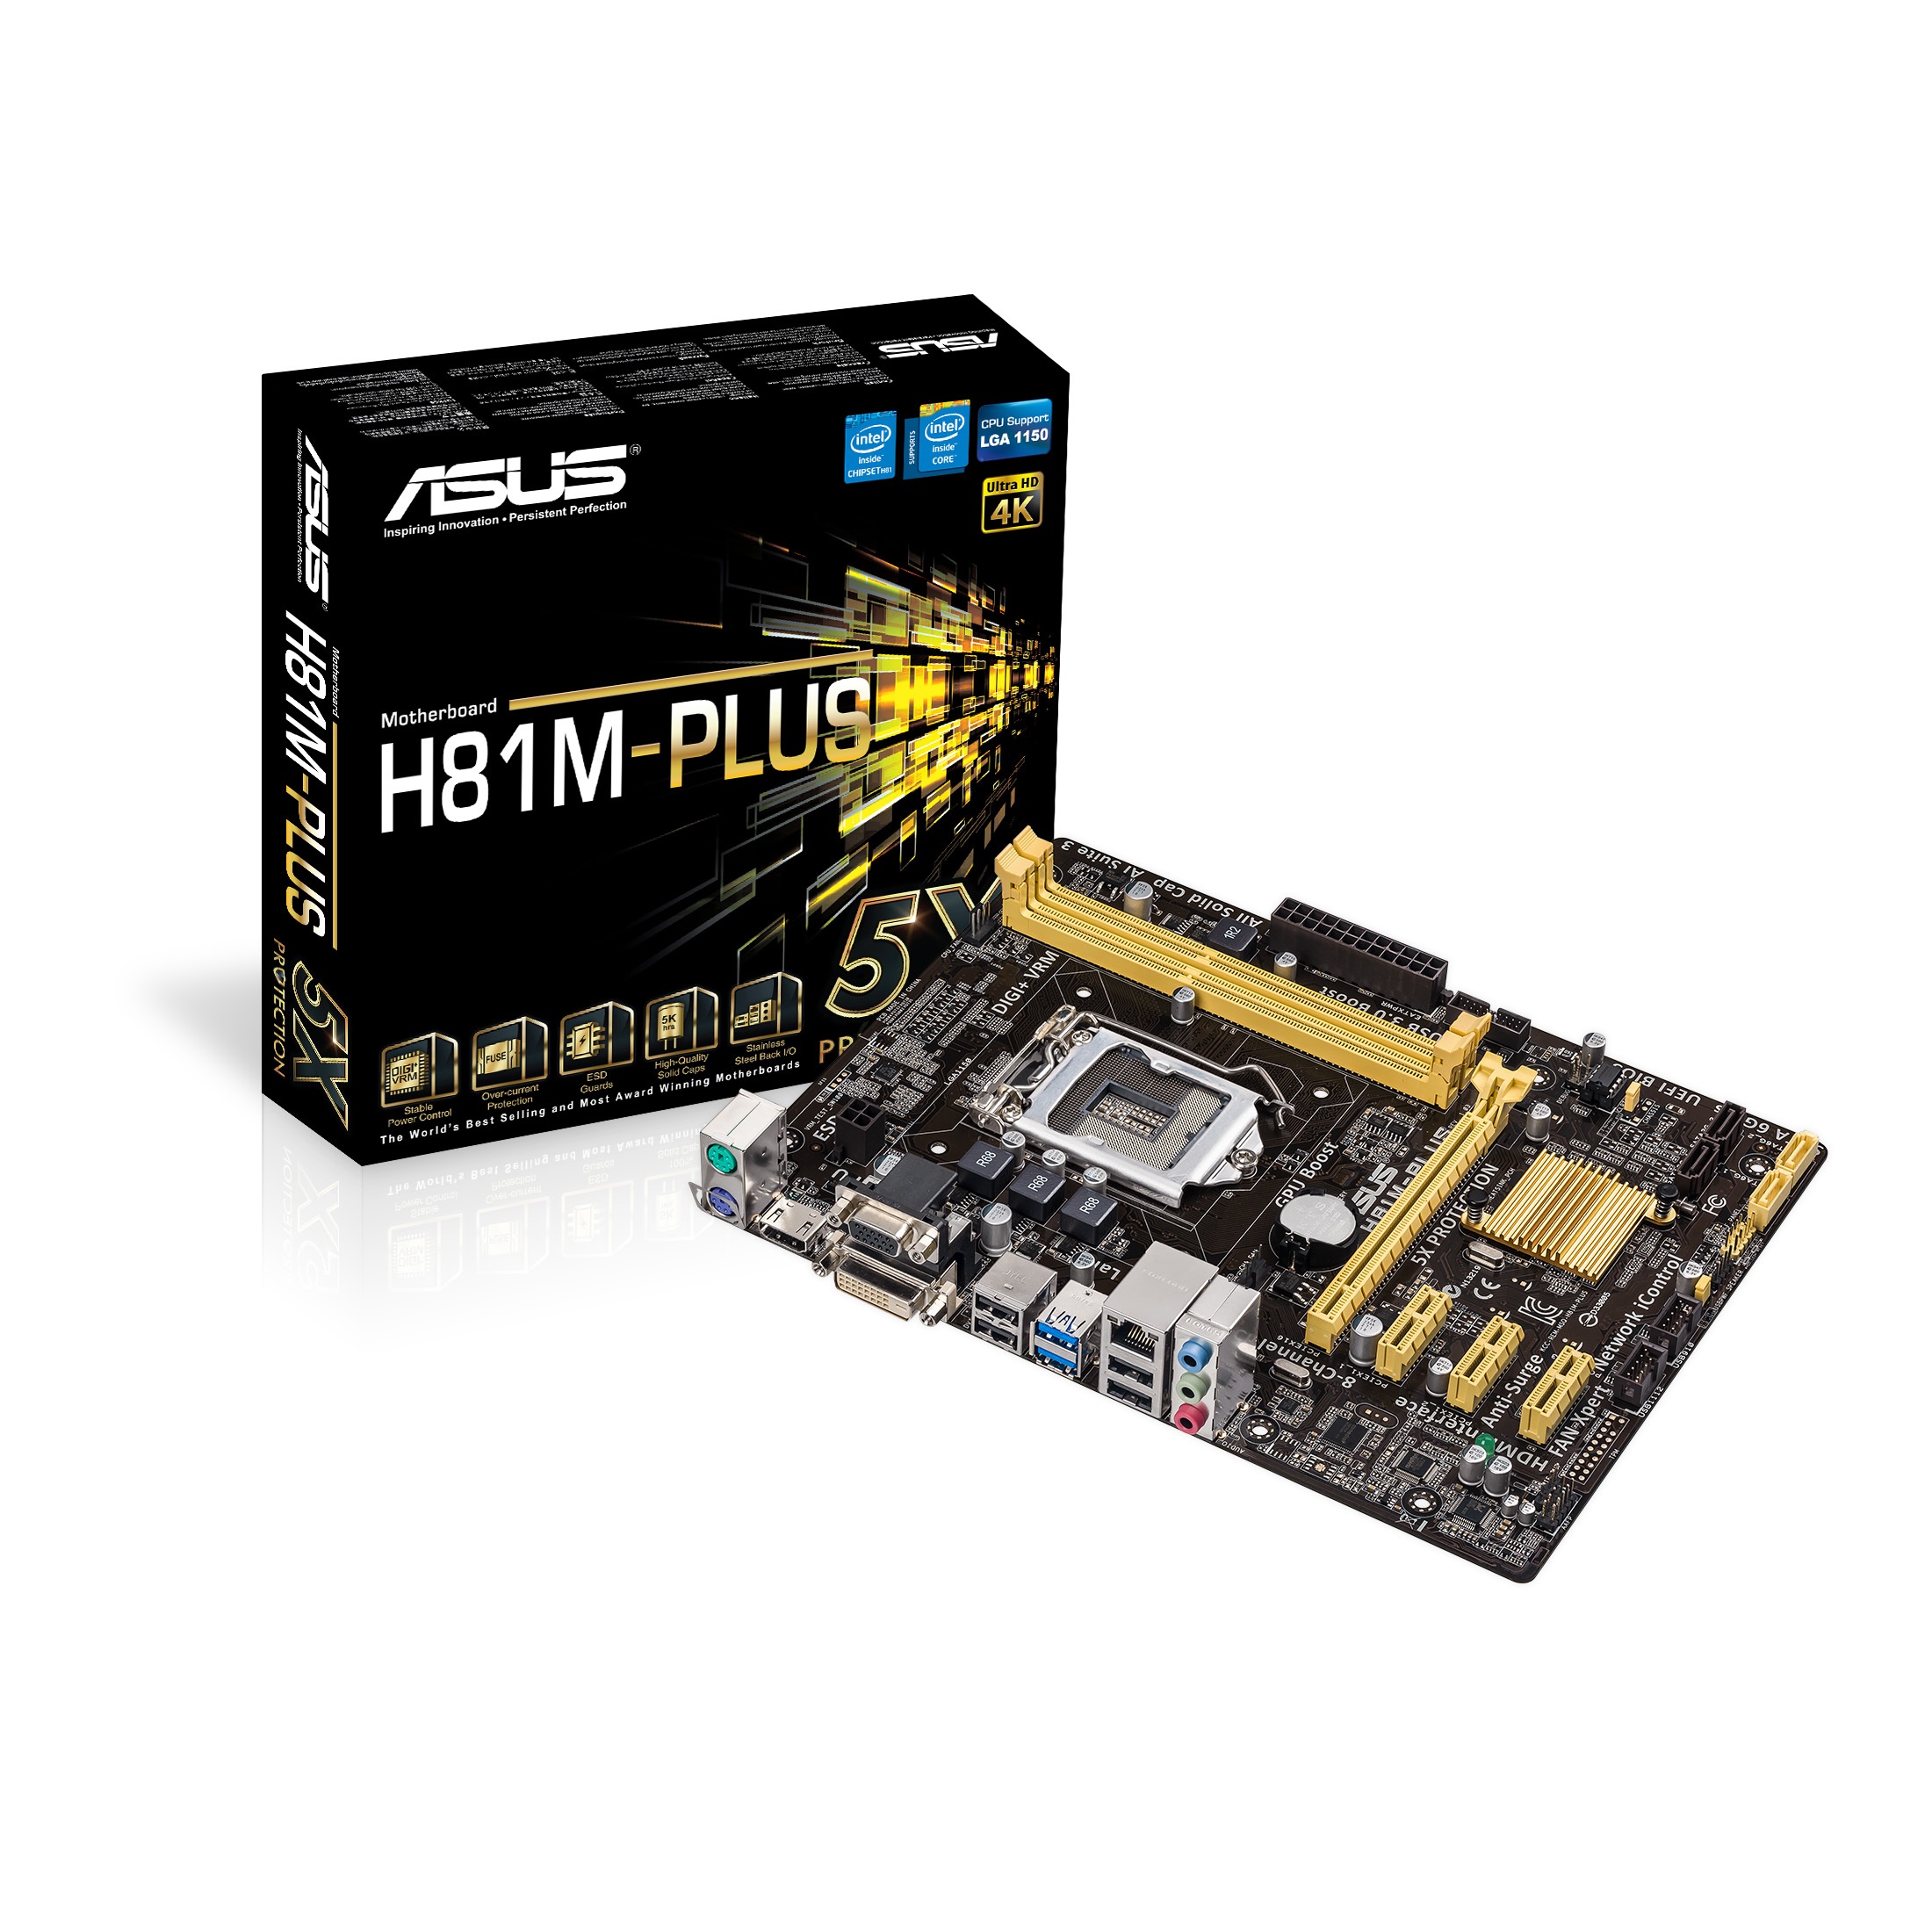 Asus - Asus H81M-PLUS Intel H81 (Socket 1150) DDR3 Micro ATX Motherboard